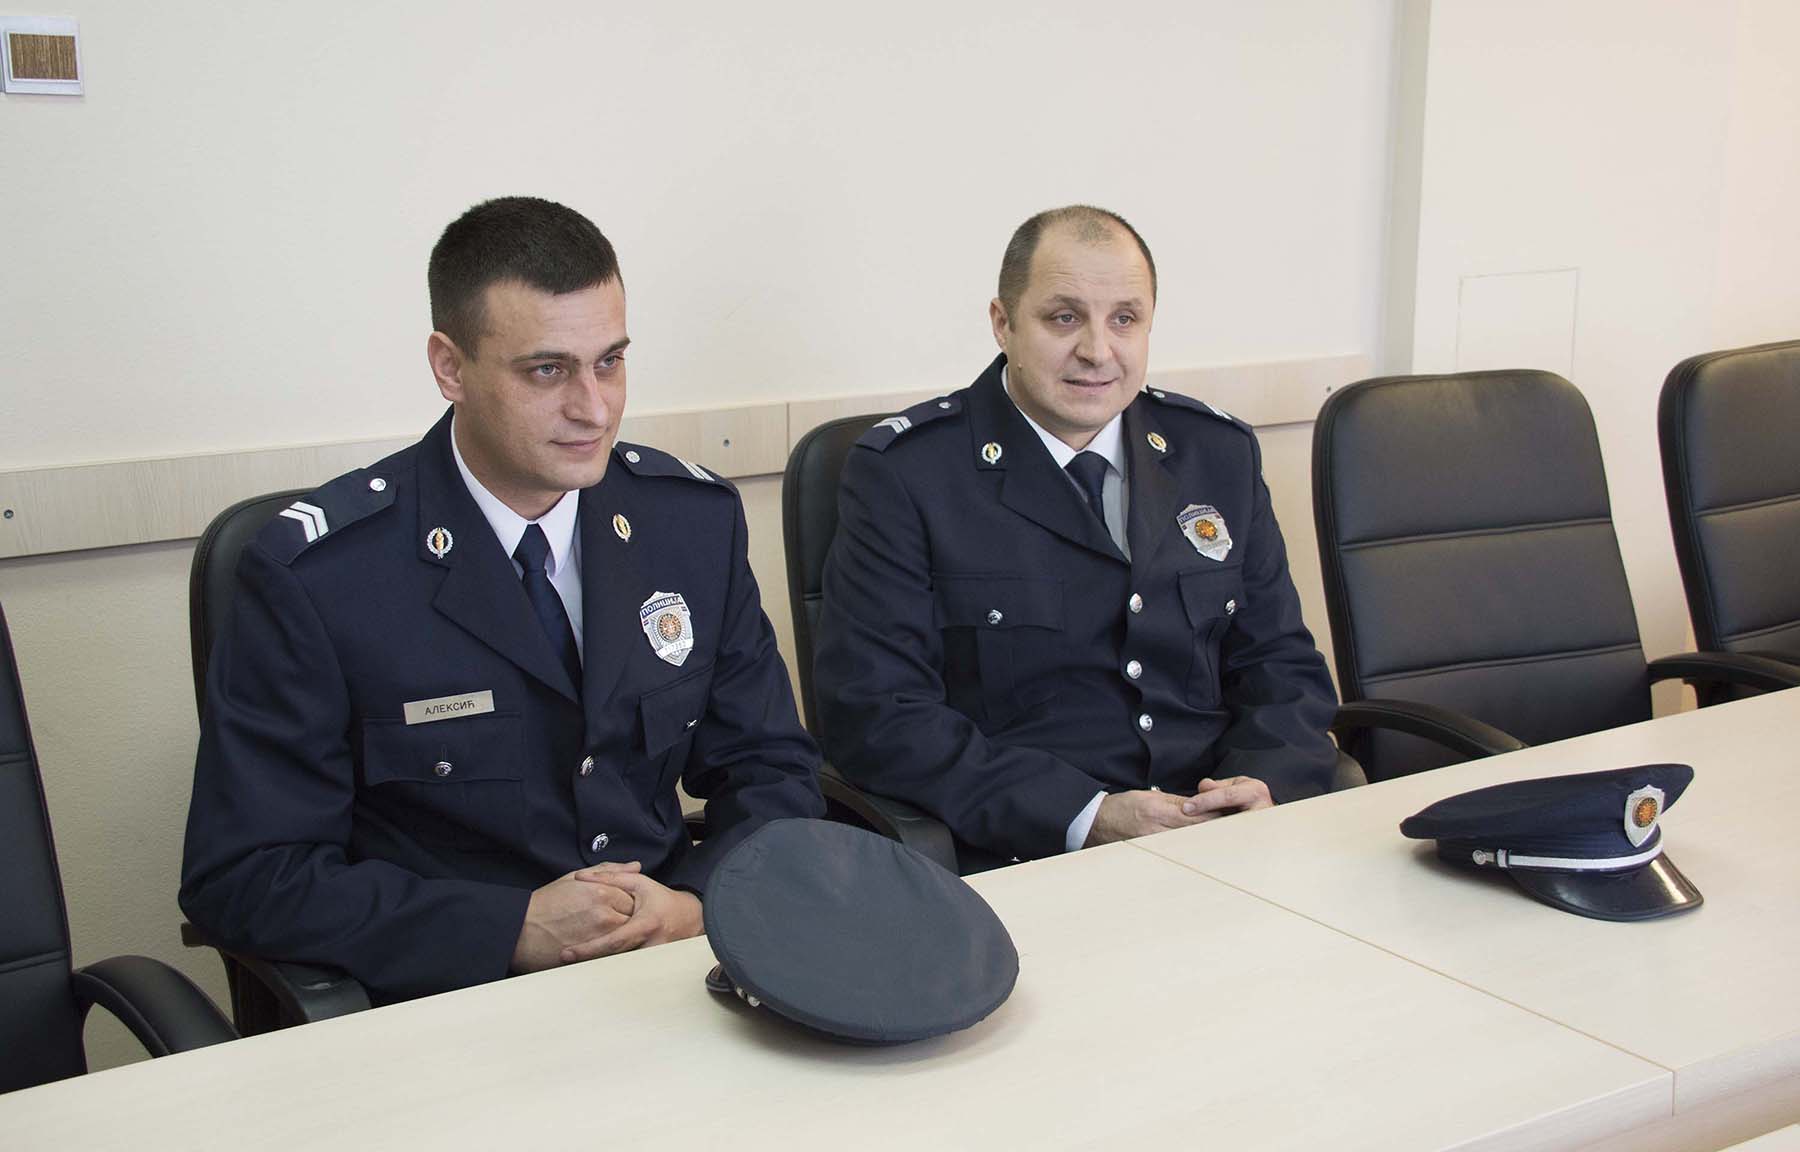 Ребић поздравио гест полицијских службеника који су донели новогодишњи пакетић дечаку који машта да постане полицајац